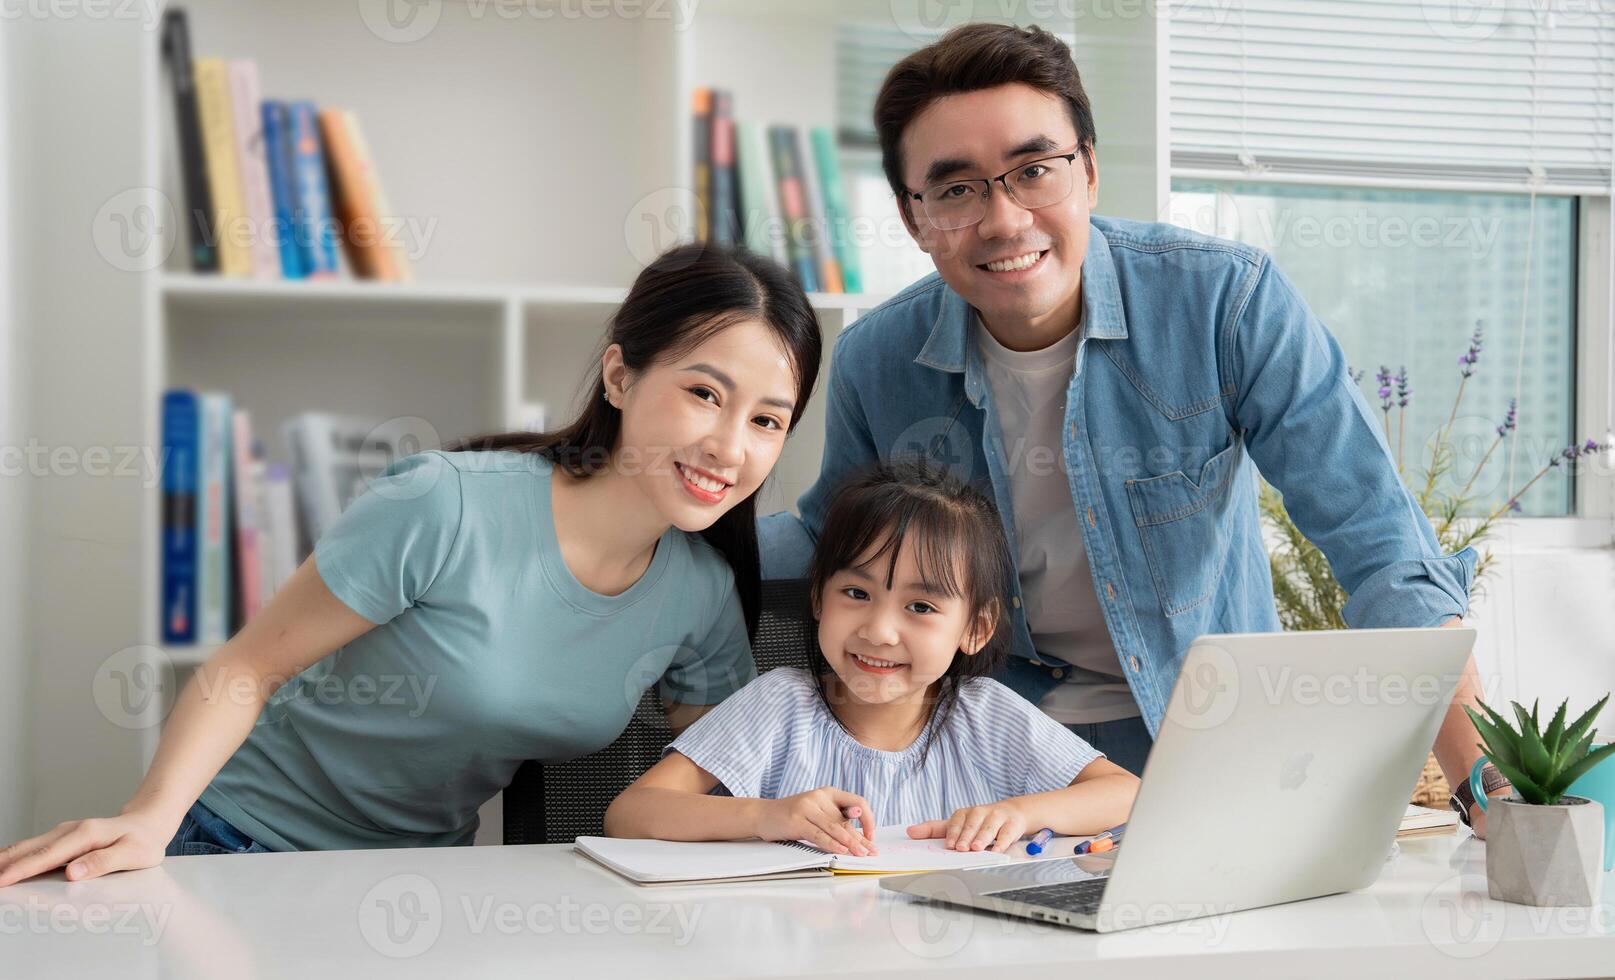 Foto von jung asiatisch Familie studieren zusammen beim Zuhause